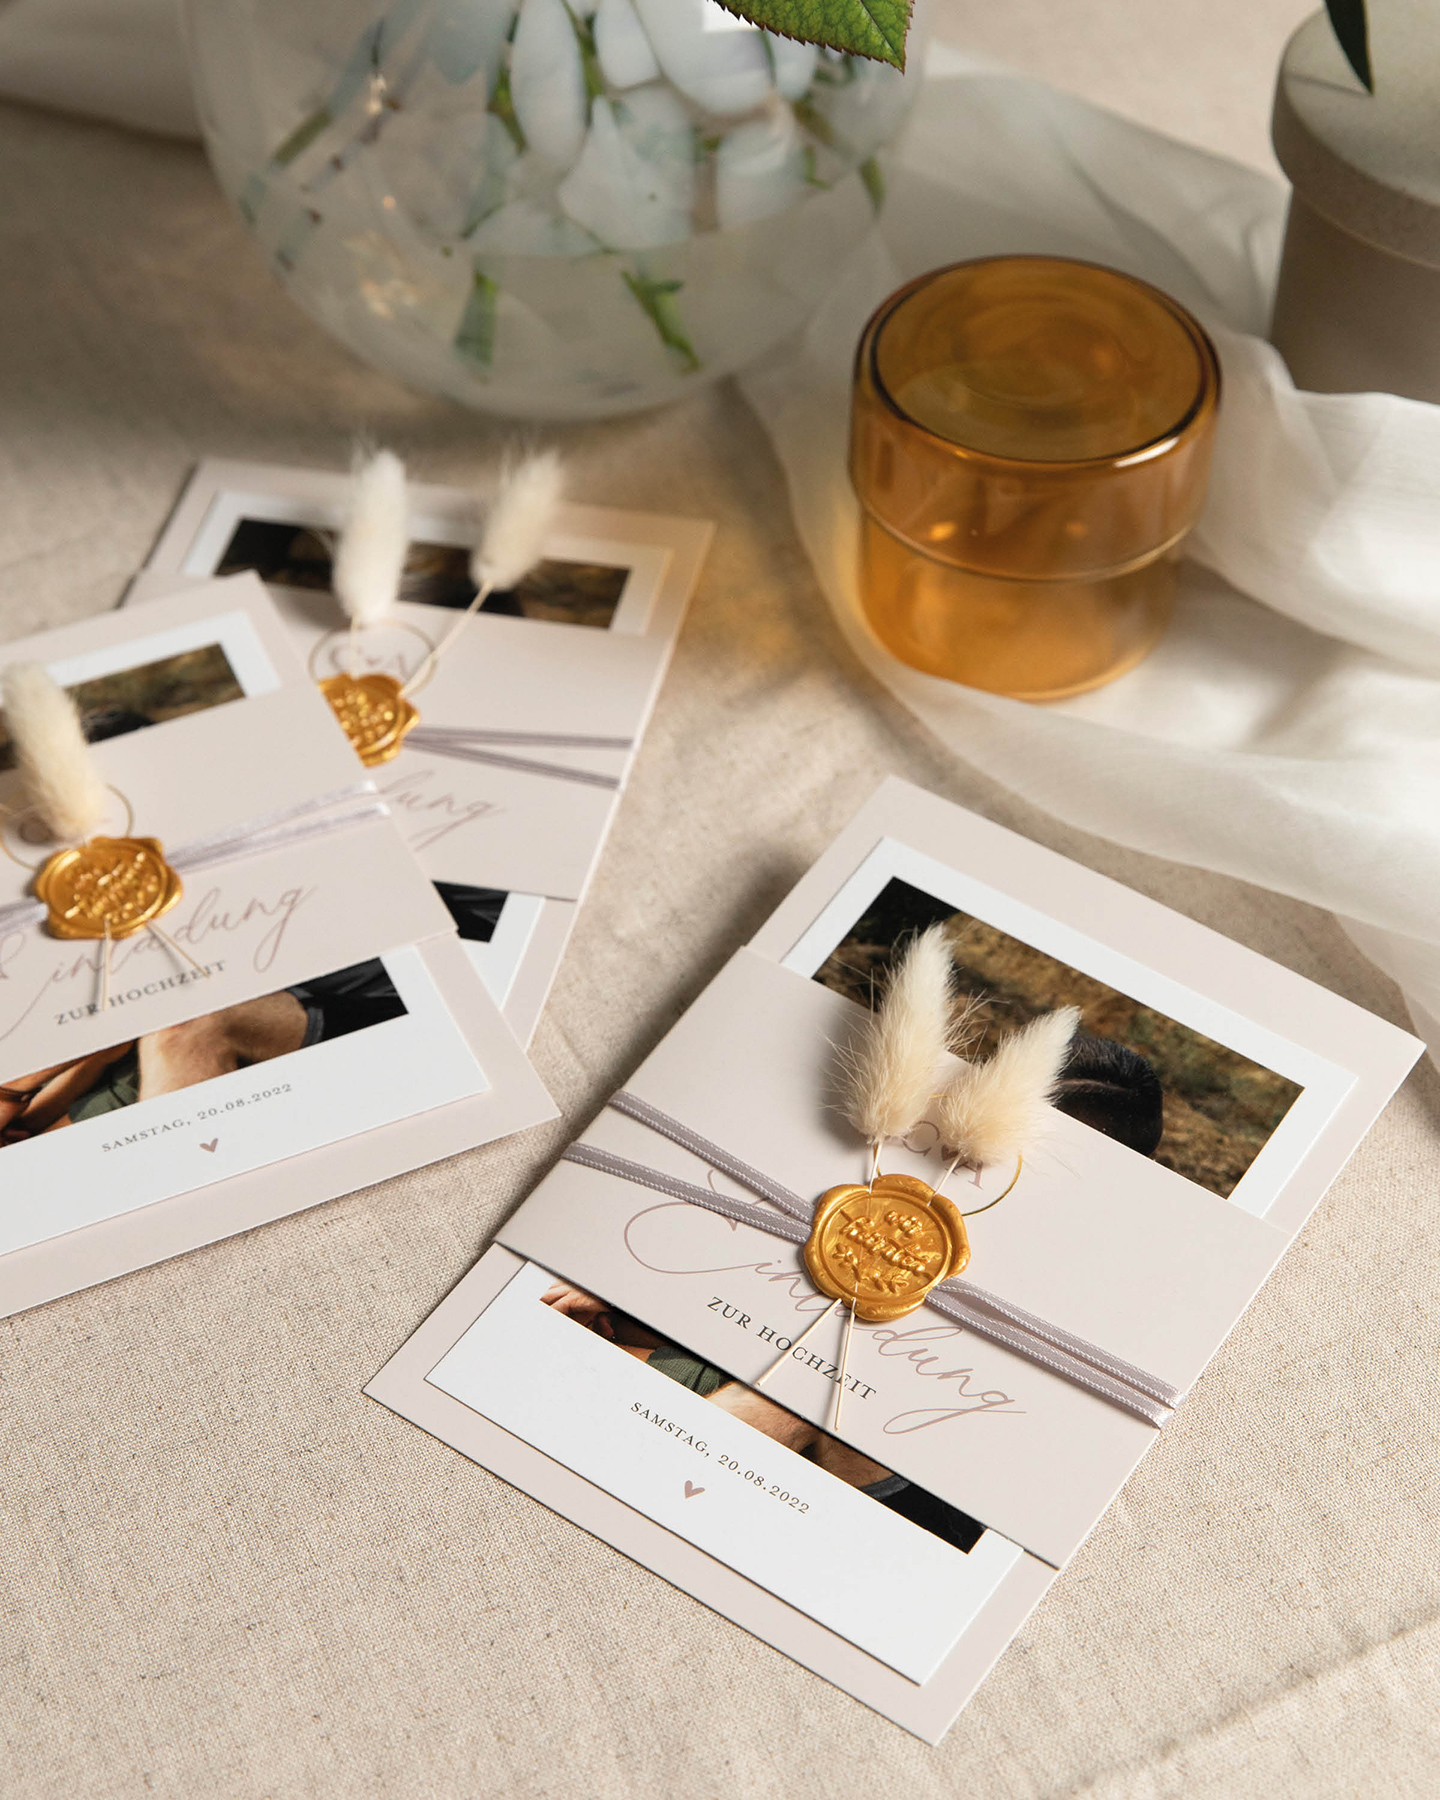 Hochzeitskarten selbst basteln - Die besten Hochzeitskarten selbst basteln ausführlich verglichen